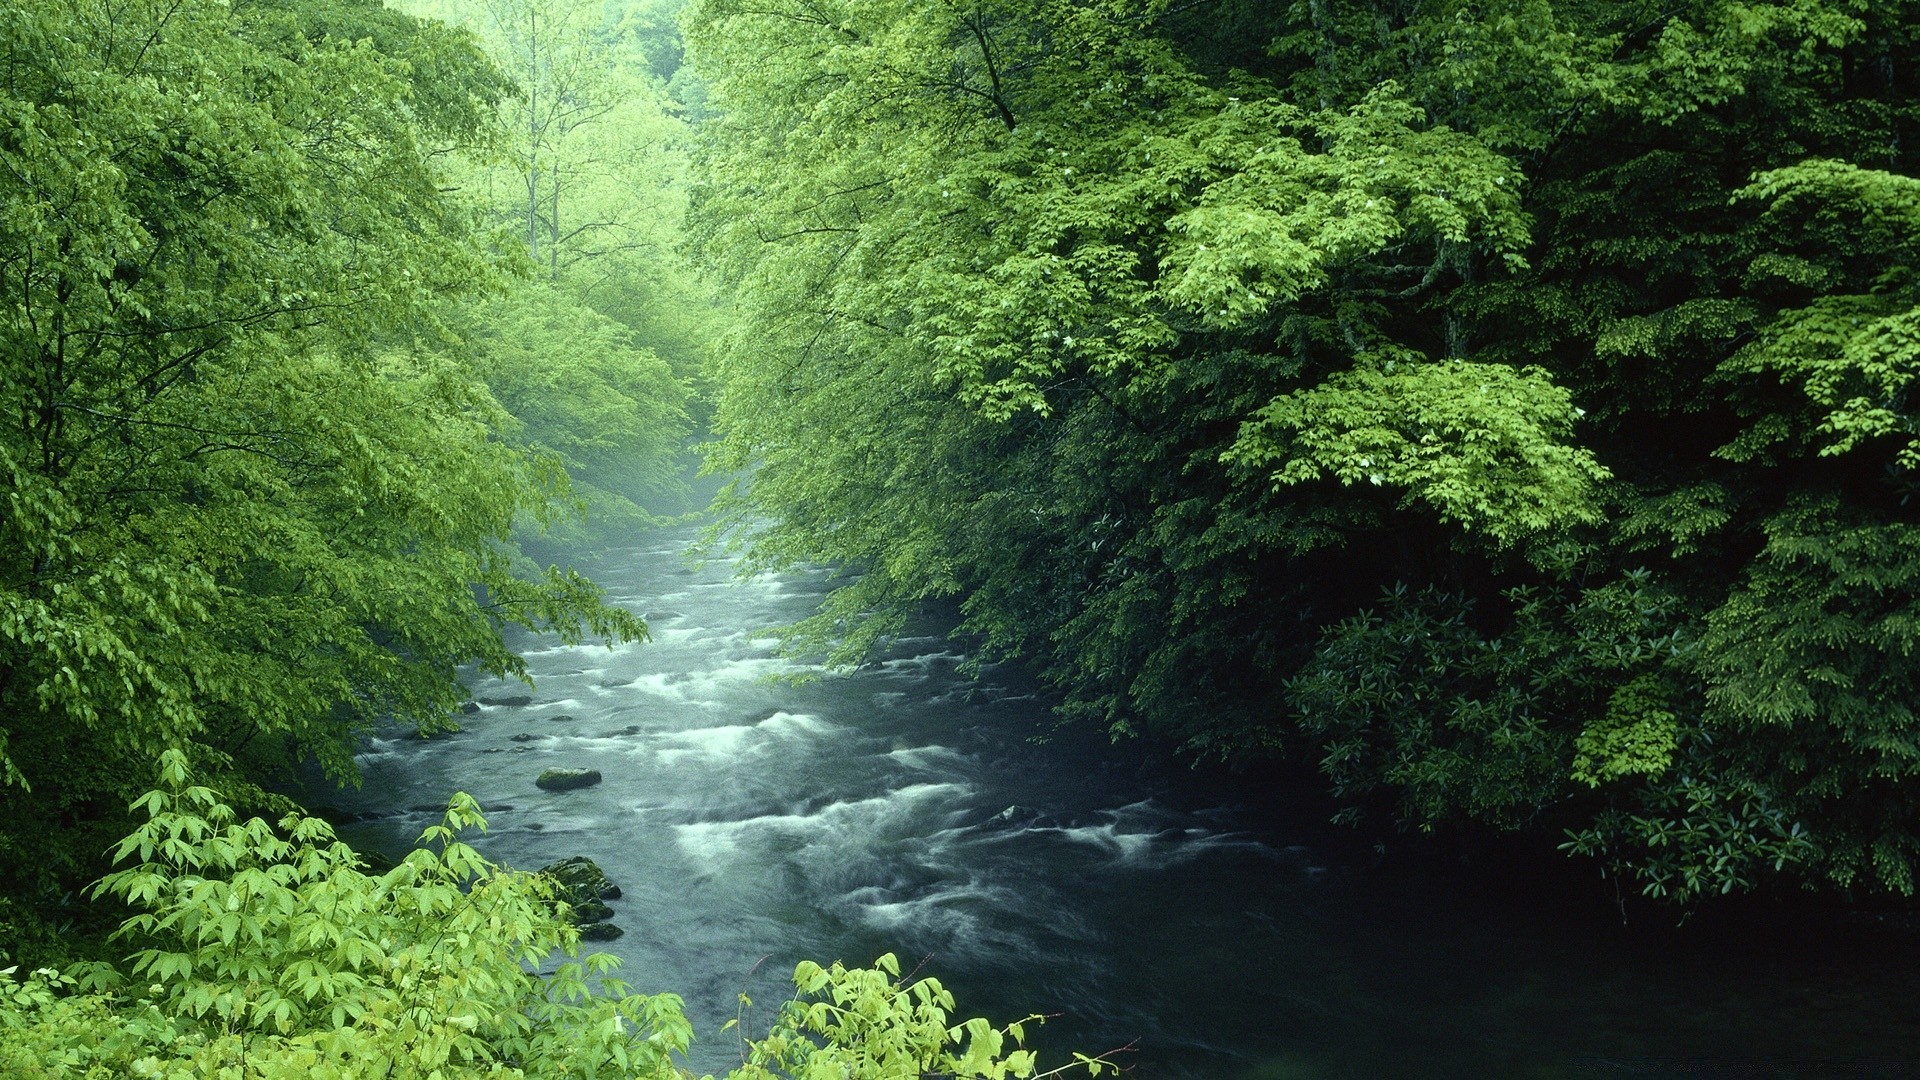 европа древесины природа воды лист дерево пейзаж пышные на открытом воздухе река среды путешествия лето дневной свет живописный парк тропический лес